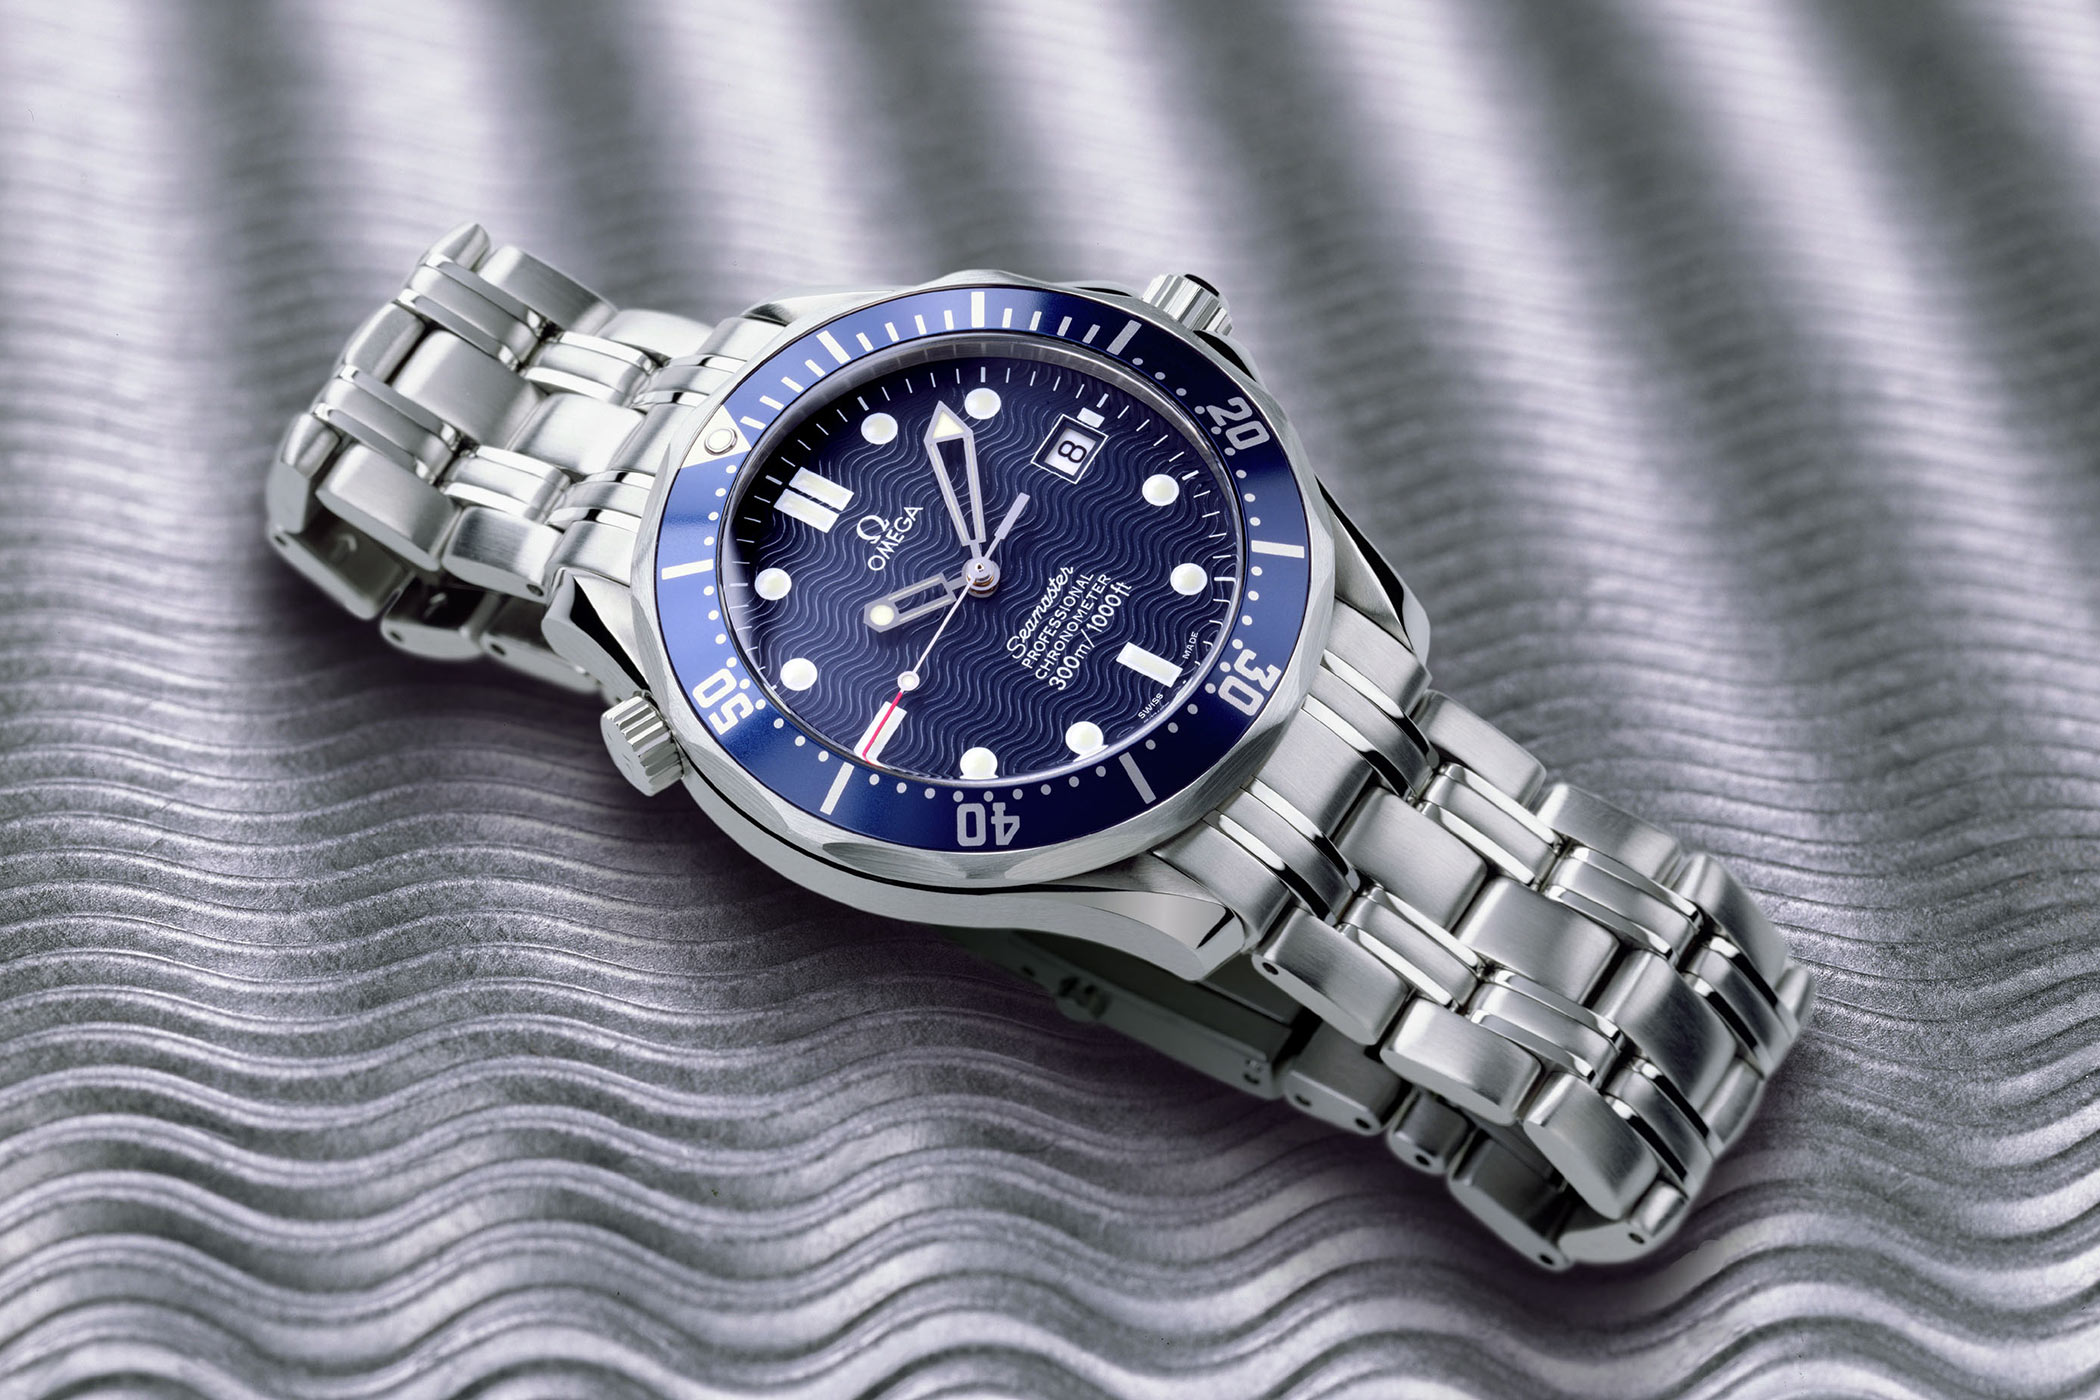 New watch tomorrow 126518 - Rolex Forums - Rolex Watch Forum